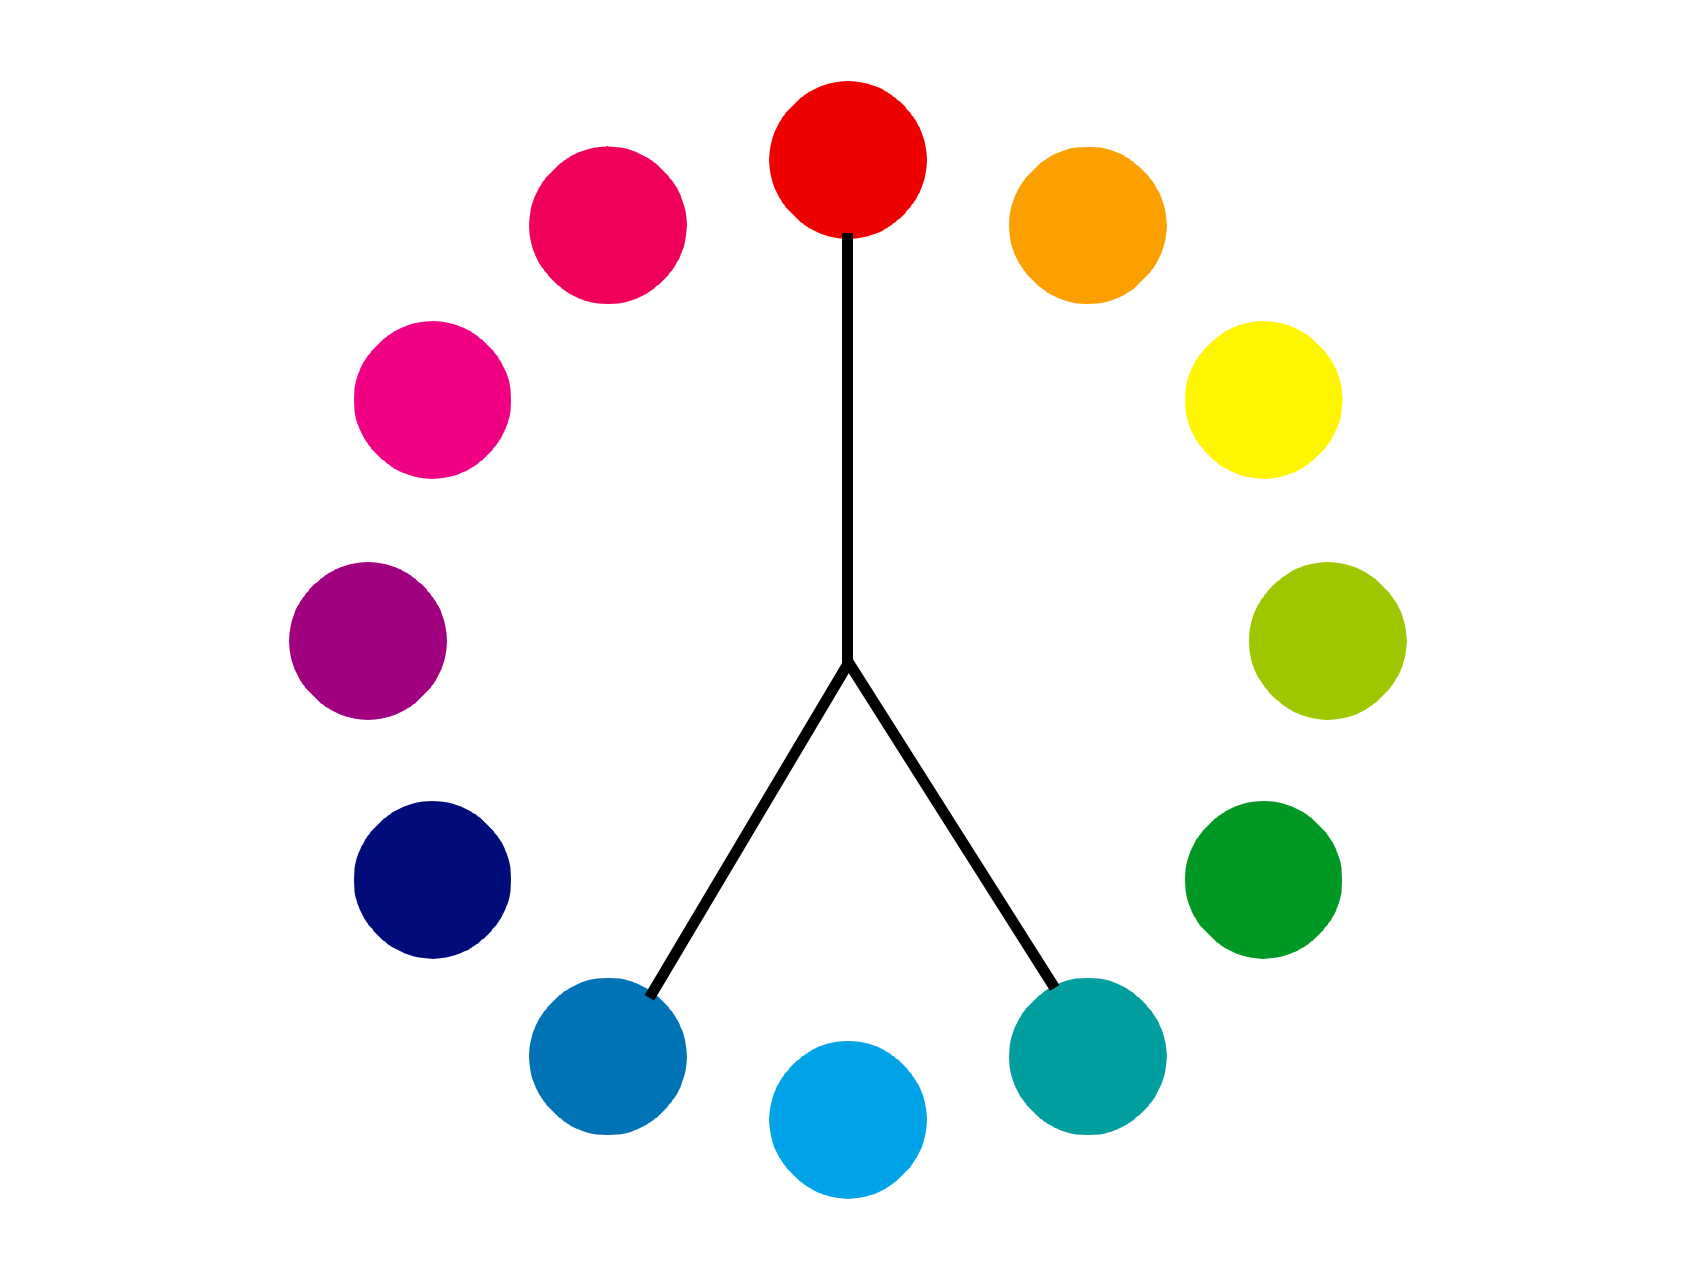 色相環の補色の両隣の色を示した図